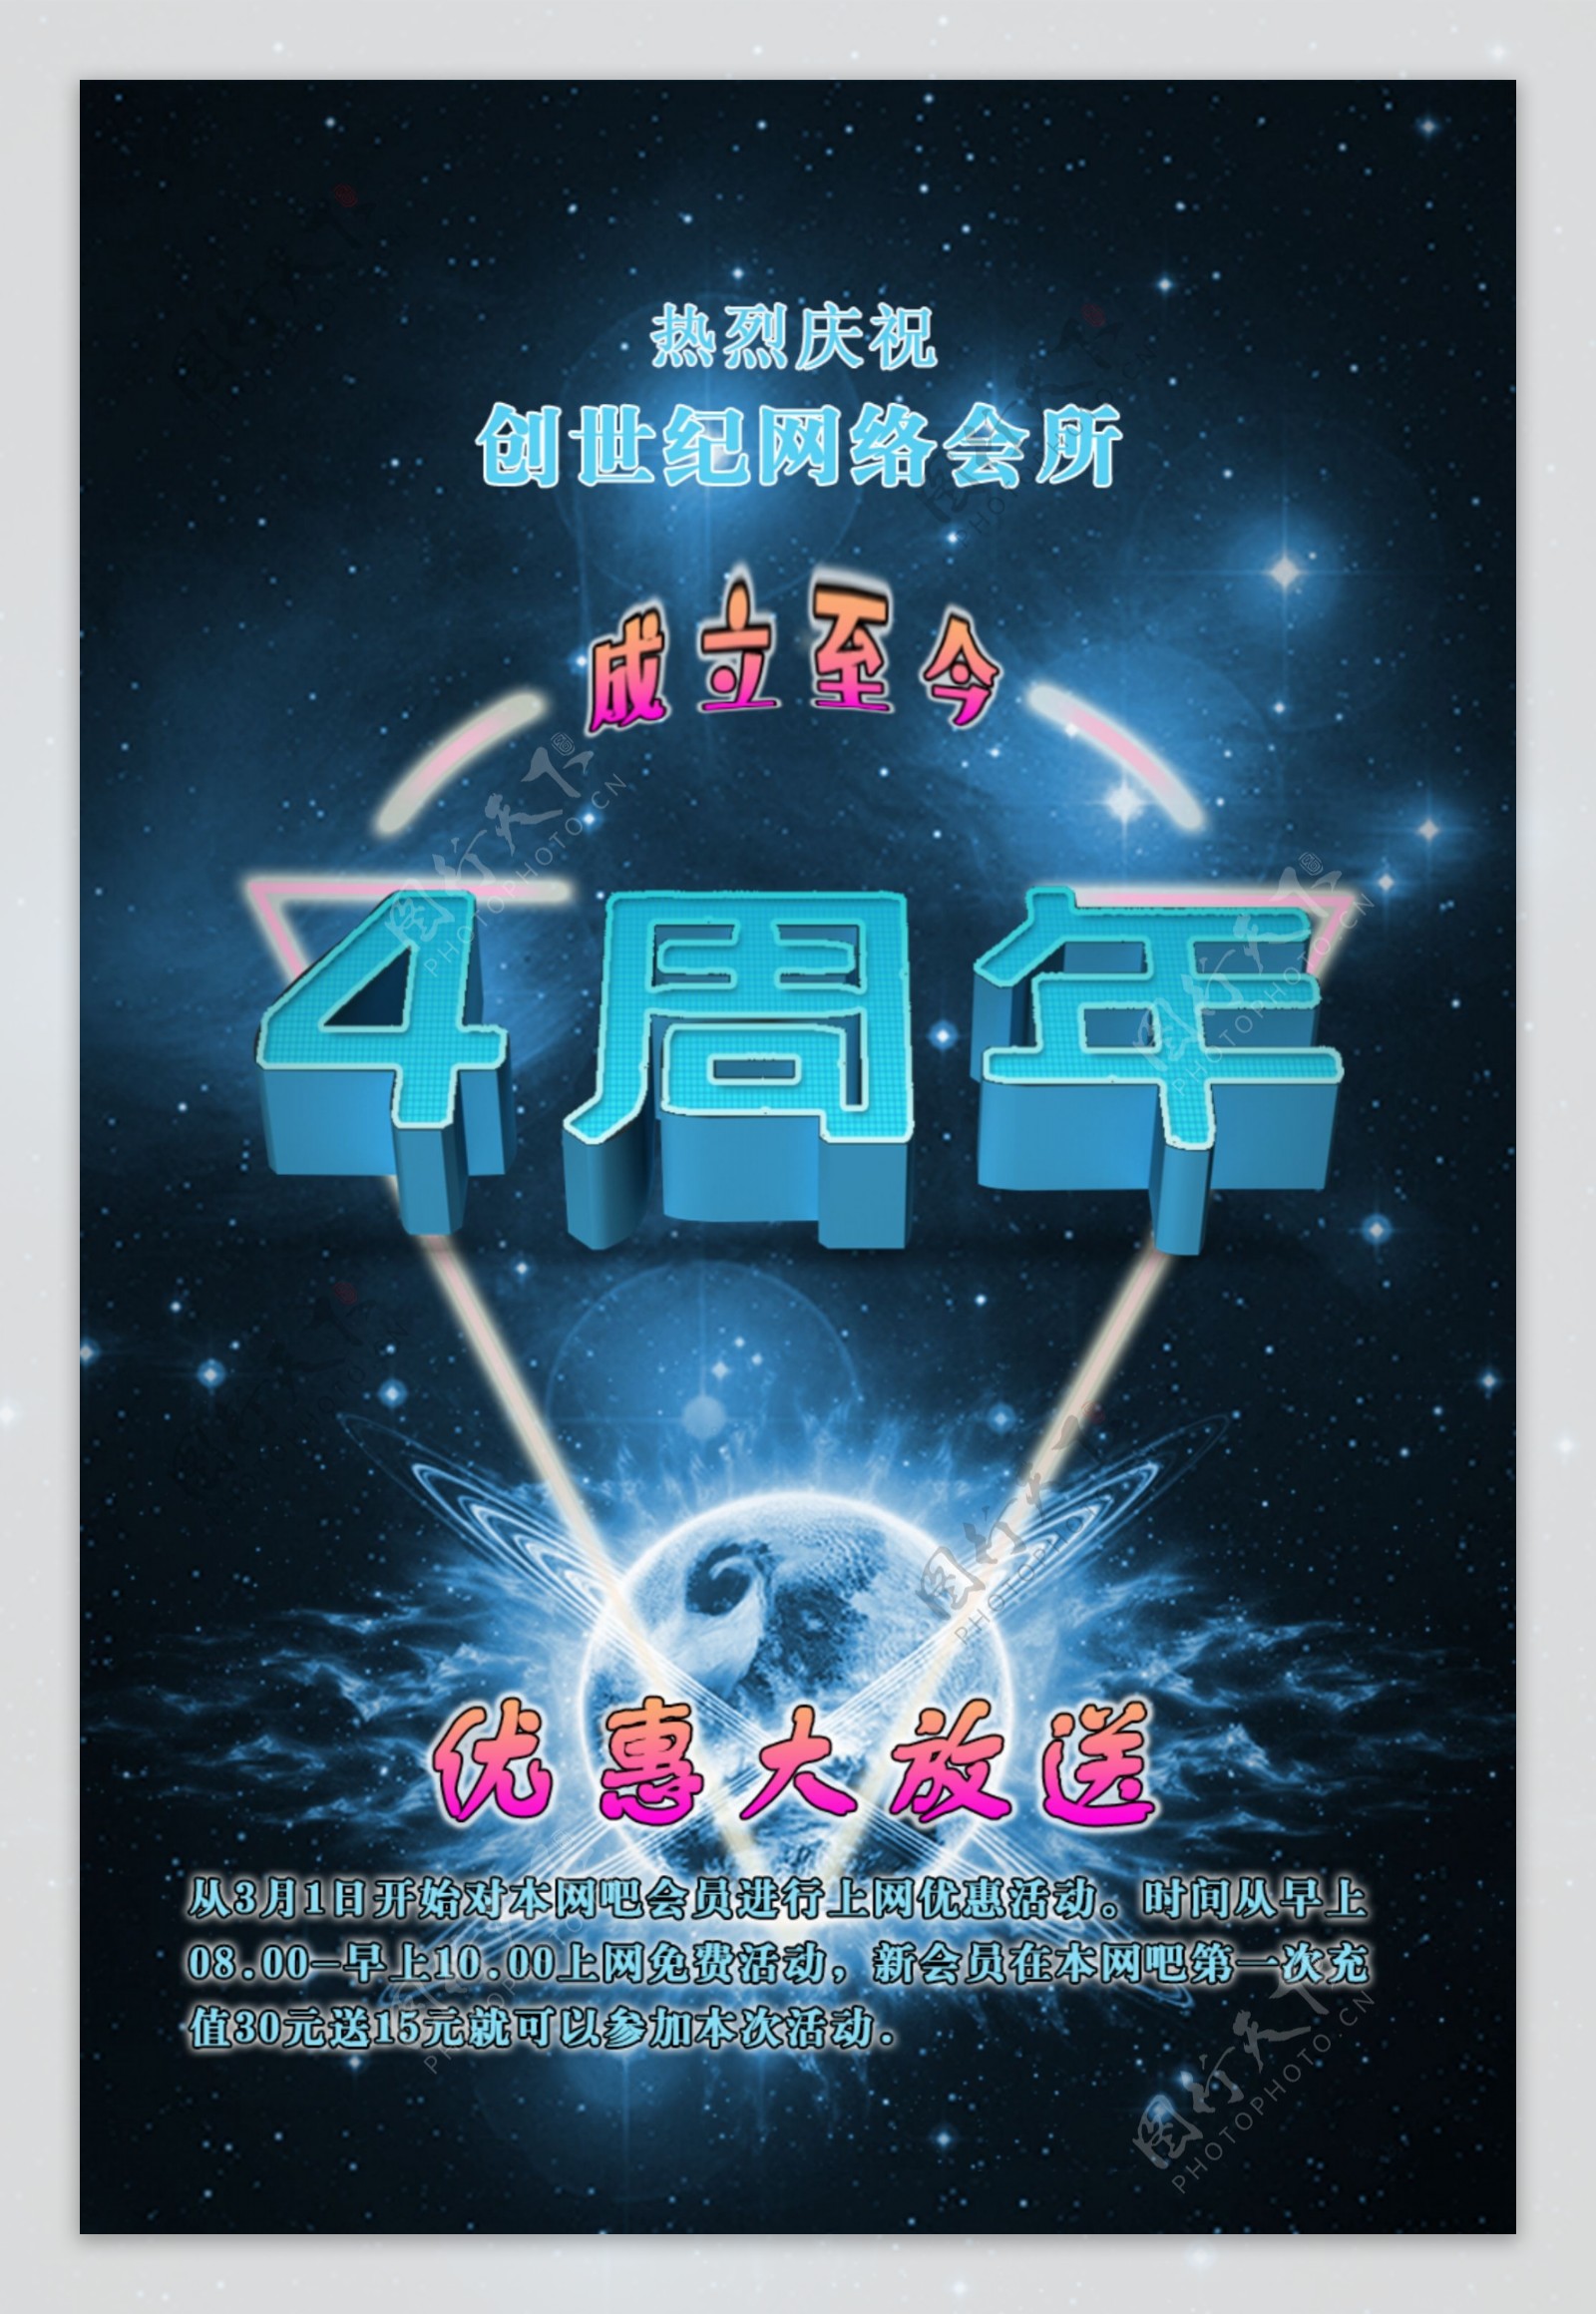 周年庆海报网吧宣传广告图片